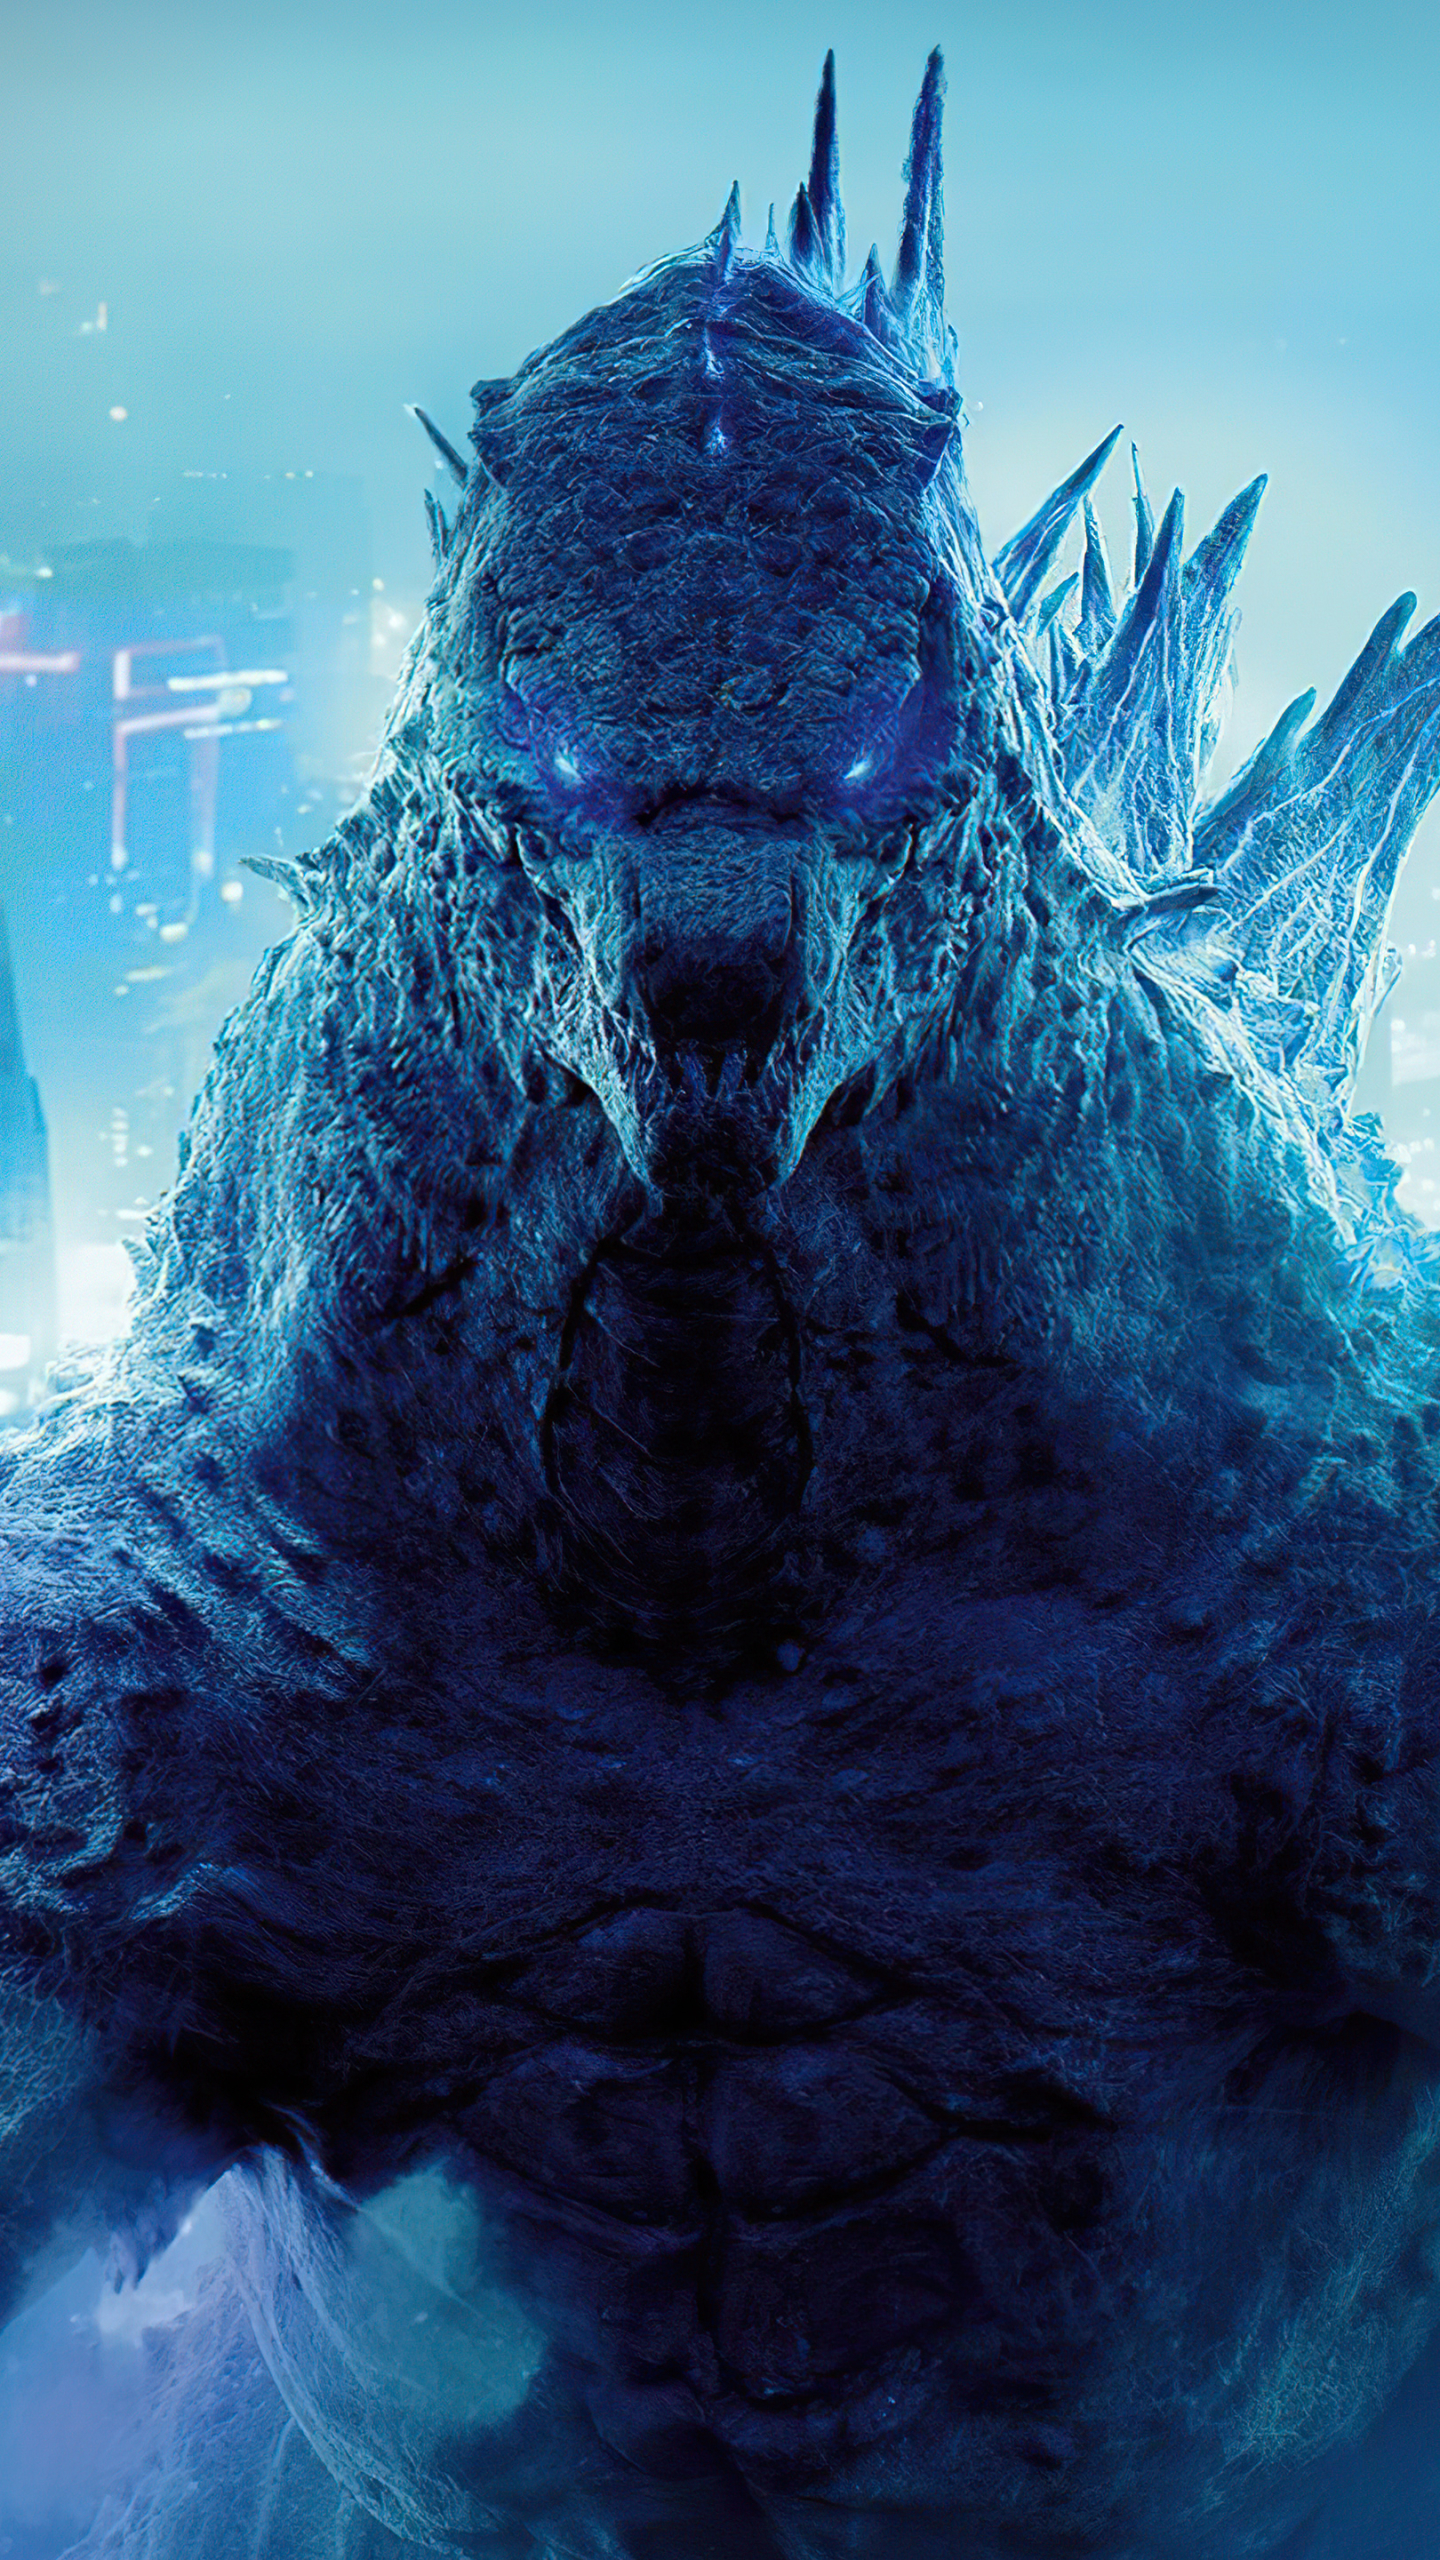 godzilla vs kong, godzilla (monsterverse), godzilla, movie iphone wallpaper